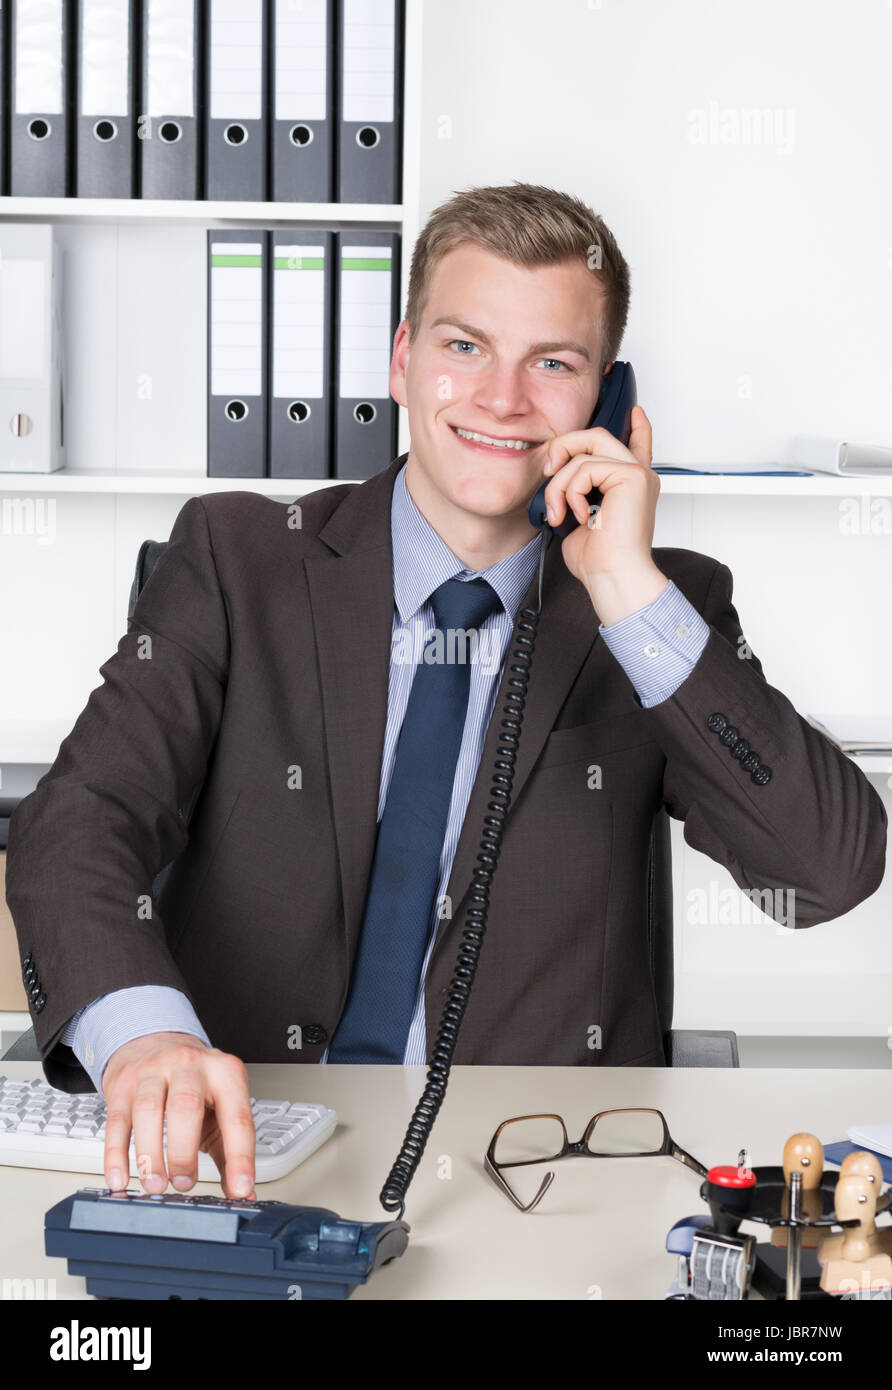 Junger Geschäftsmann sitzt am Schreibtisch im Büro und wählt eine Nummer am Telefon. Im Hintergrund befindet sich ein Regal. Der Mann schaut zur Kamera und lächelt. Stock Photo